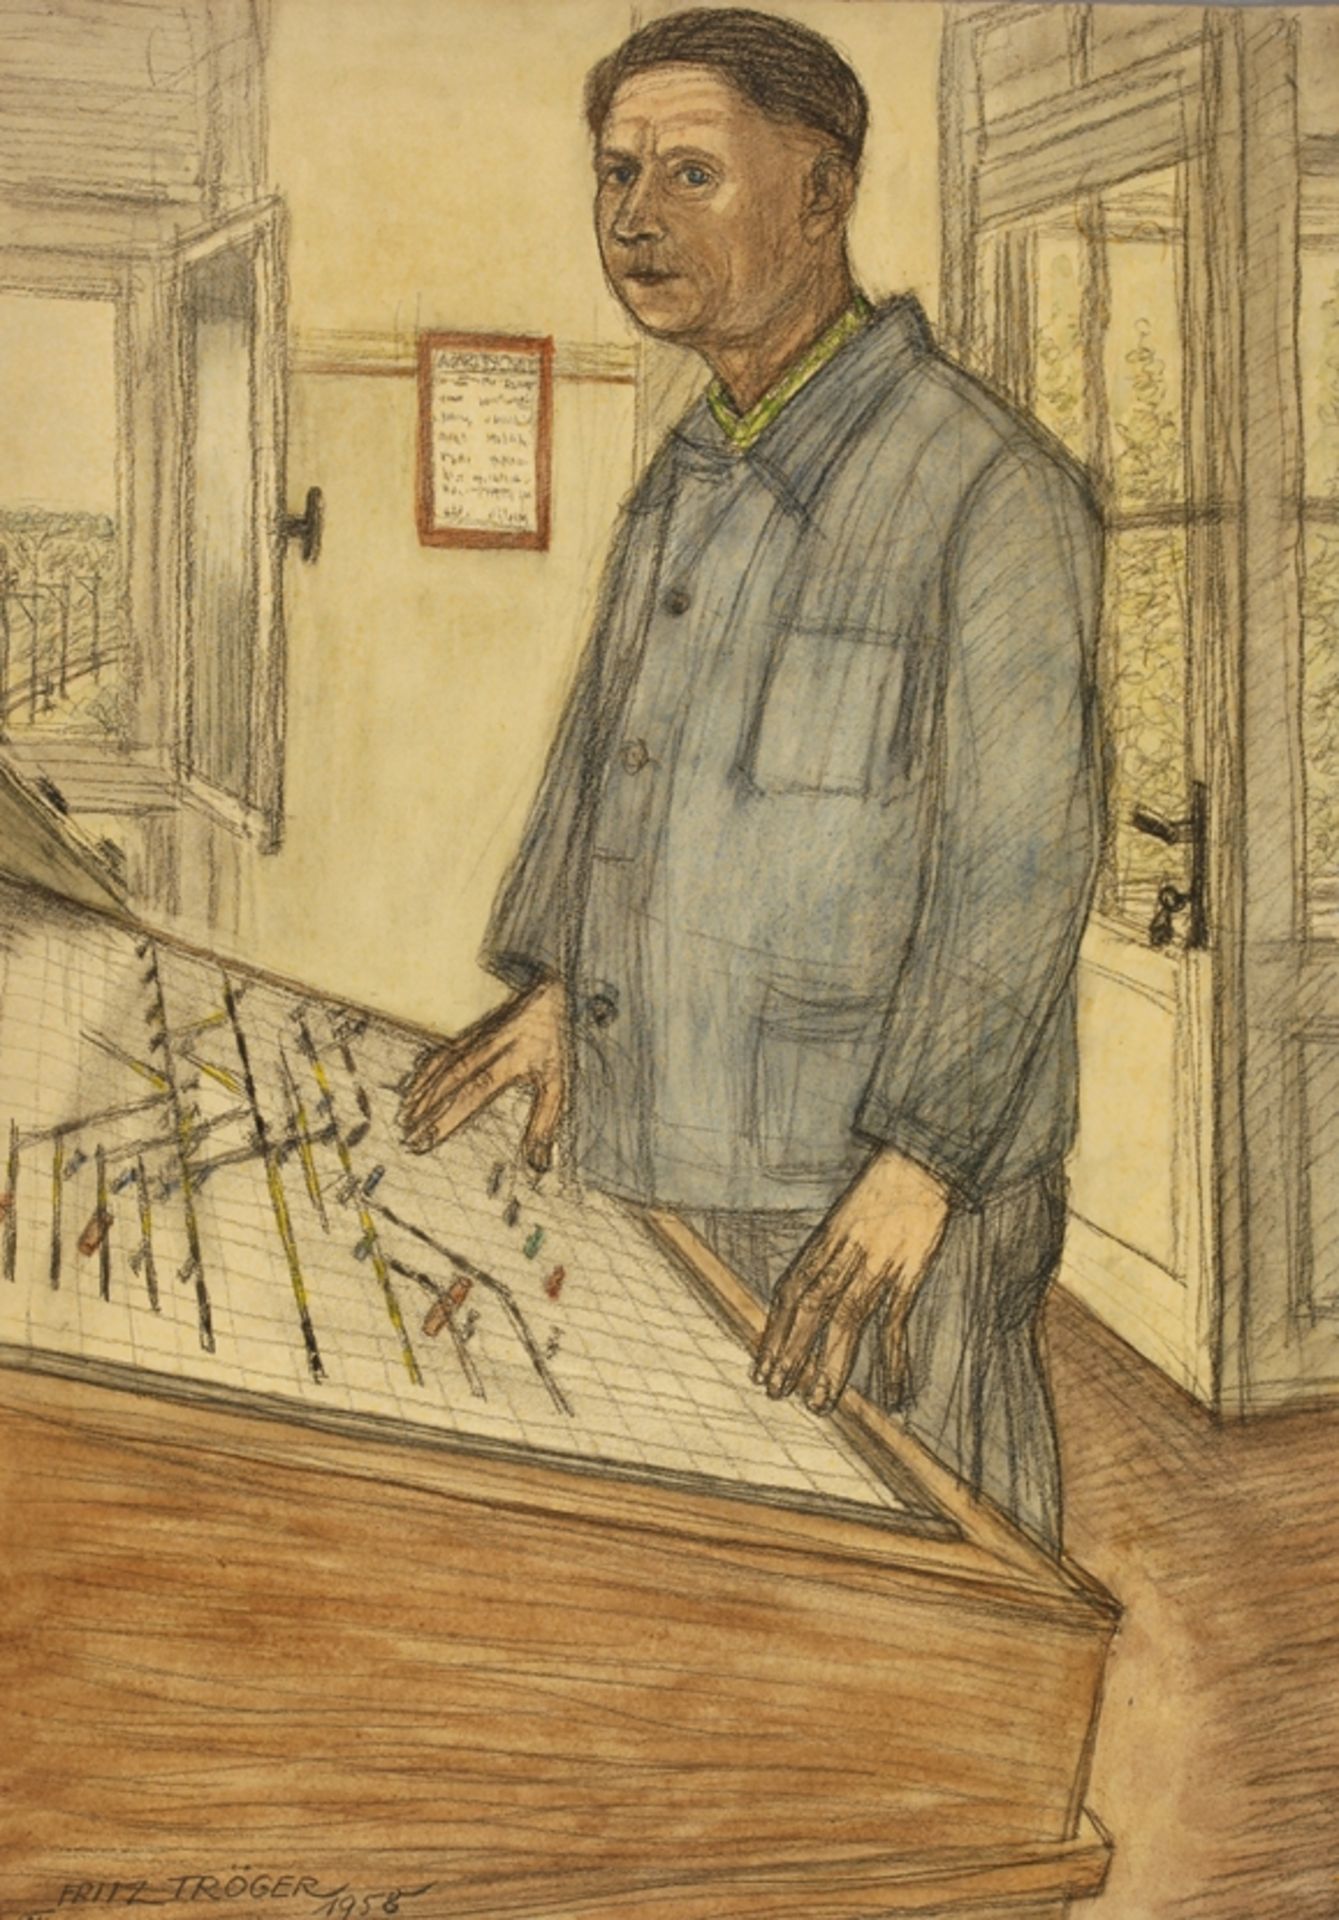 Fritz Tröger, Am Schaltpultälterer Mann in Arbeitskleidung, neben einem Schaltpult stehend, wohl